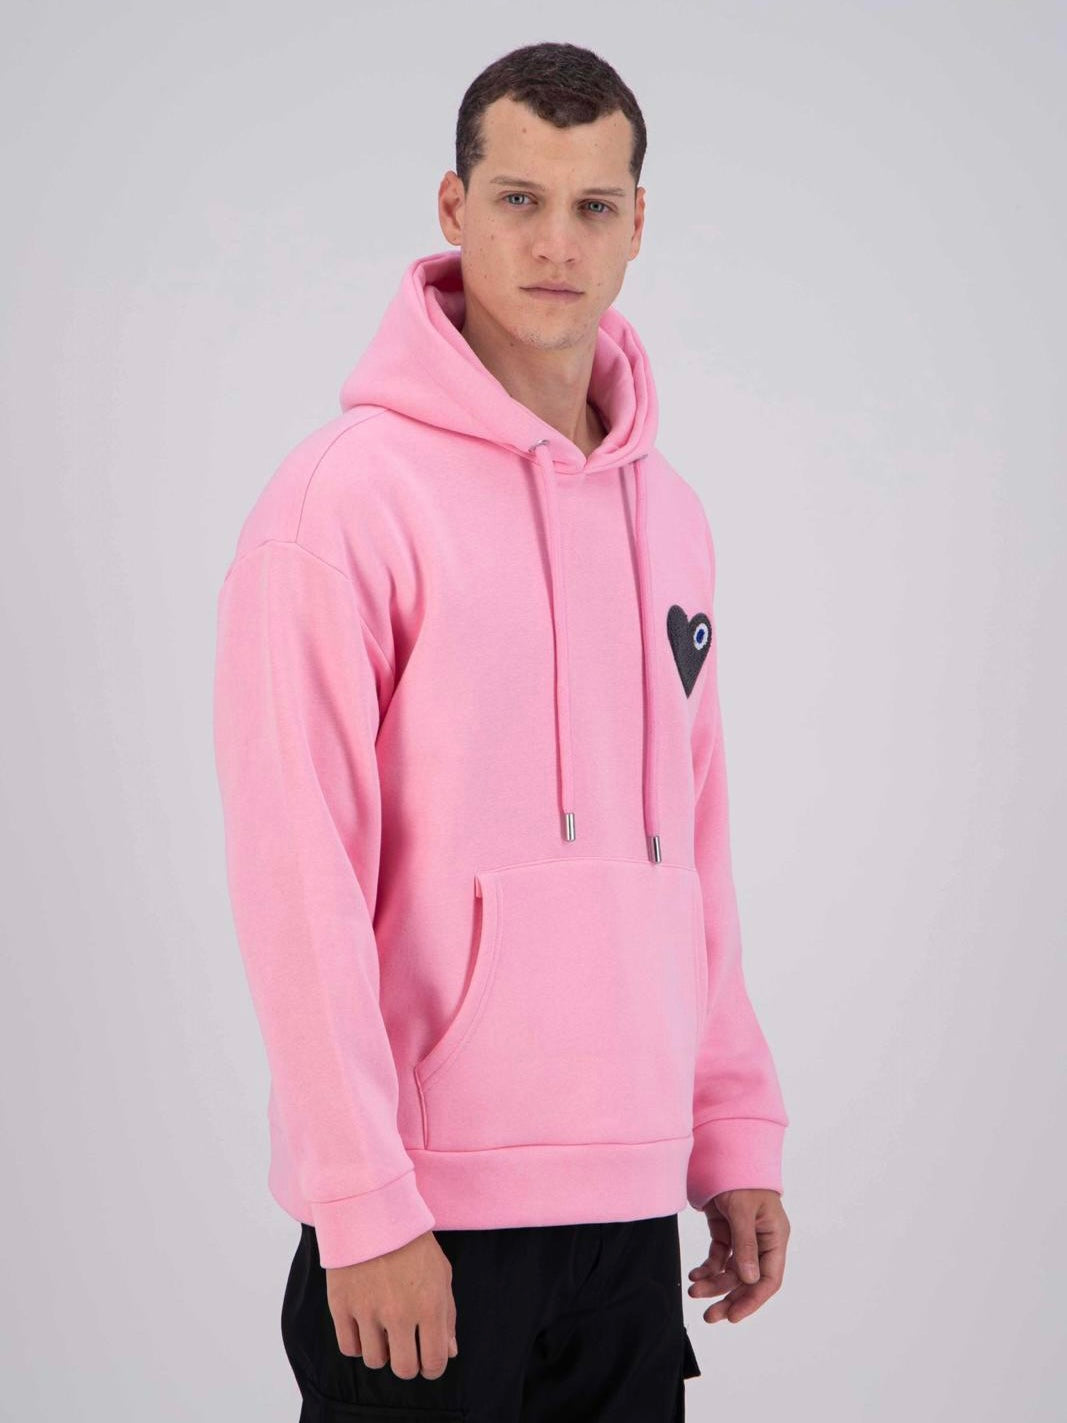 ADJ - Pink hoodie Black heart